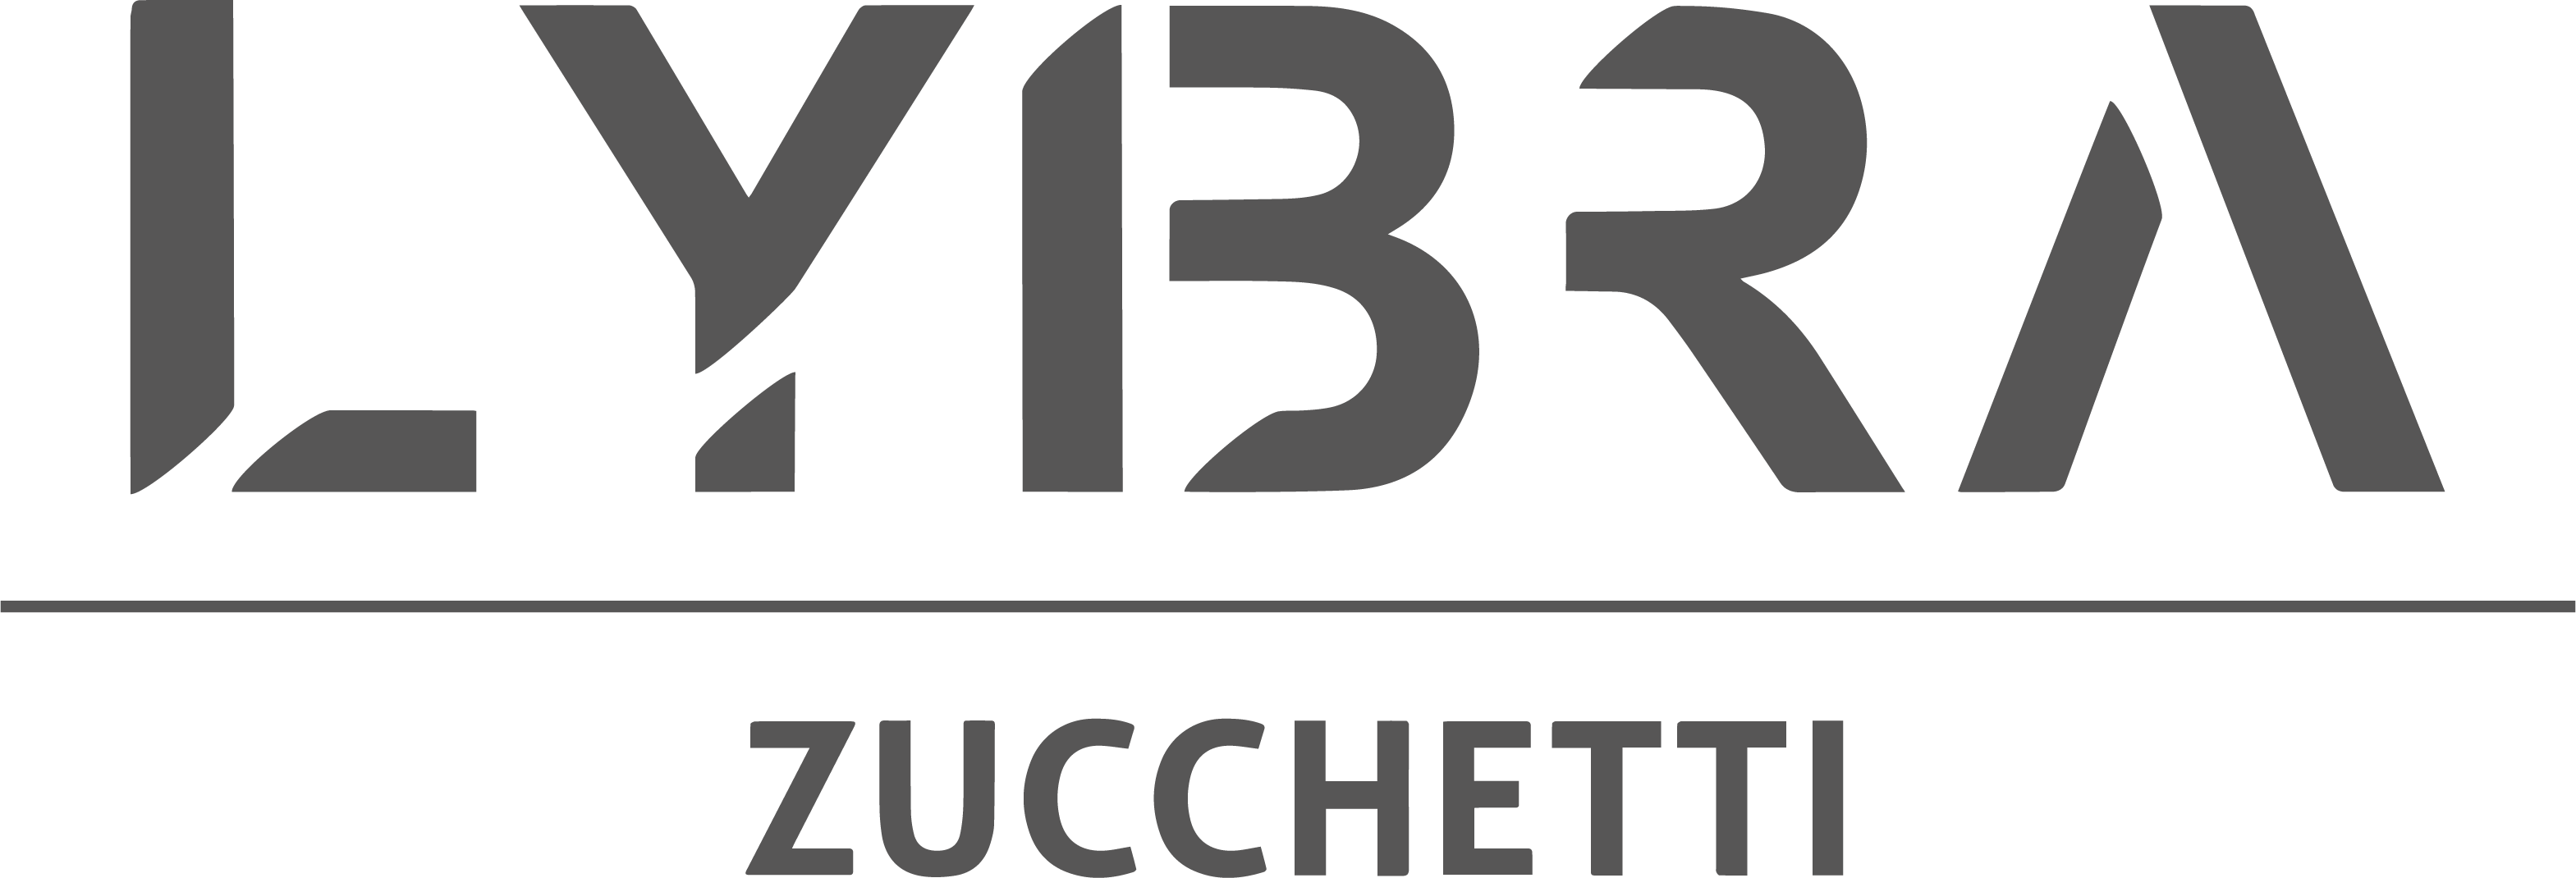 Lybra Tech logo